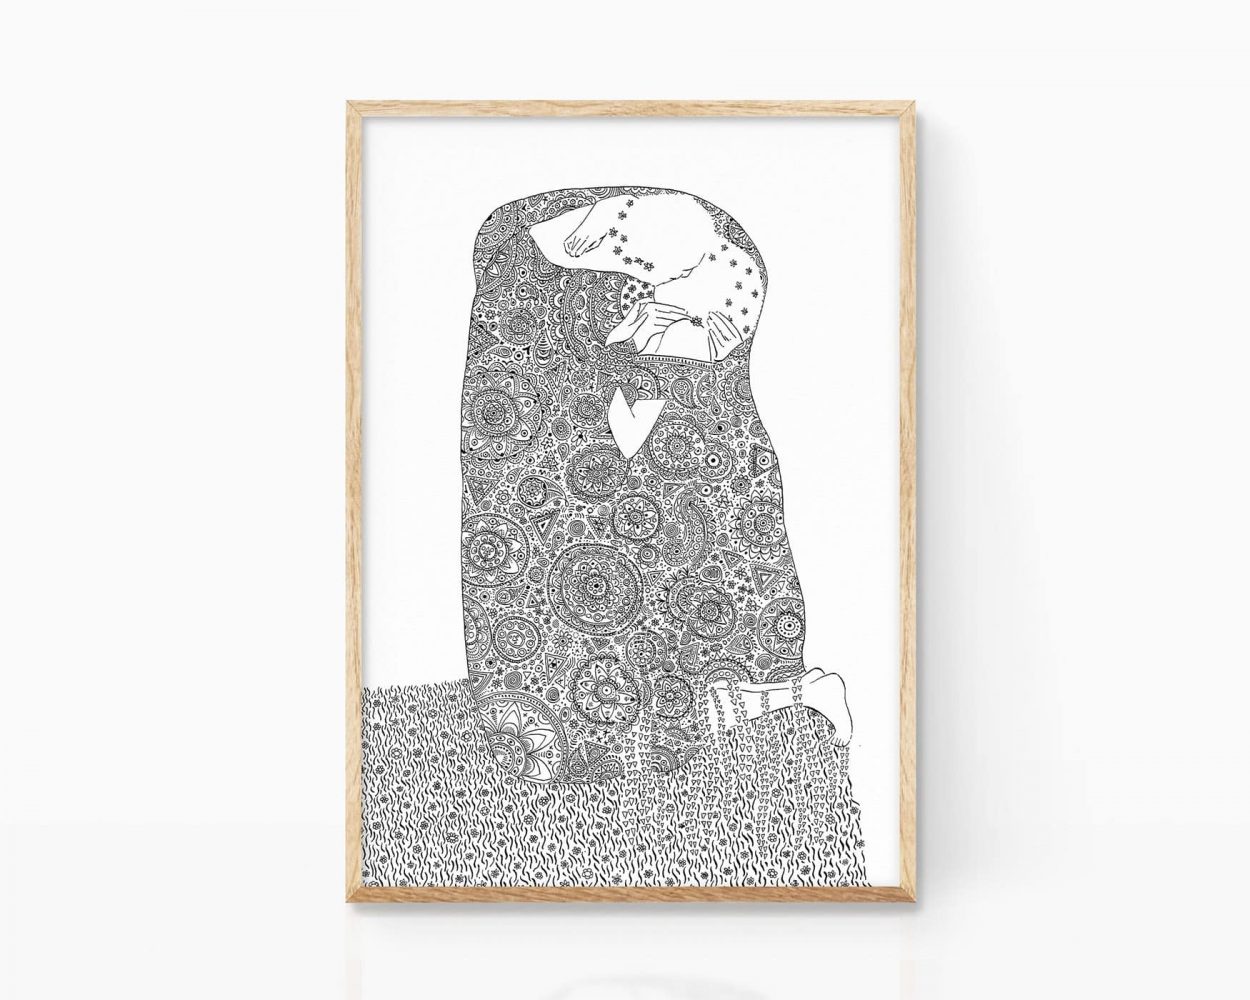 Ilustración El Beso de Klimt (Versión de Marroiak). Cuadro decorativo para enmarcar con un dibujo en blanco y negro y línea minimalista del artista Gustav Klimt. Prints con versiones de art decó disponibles para comprar online.